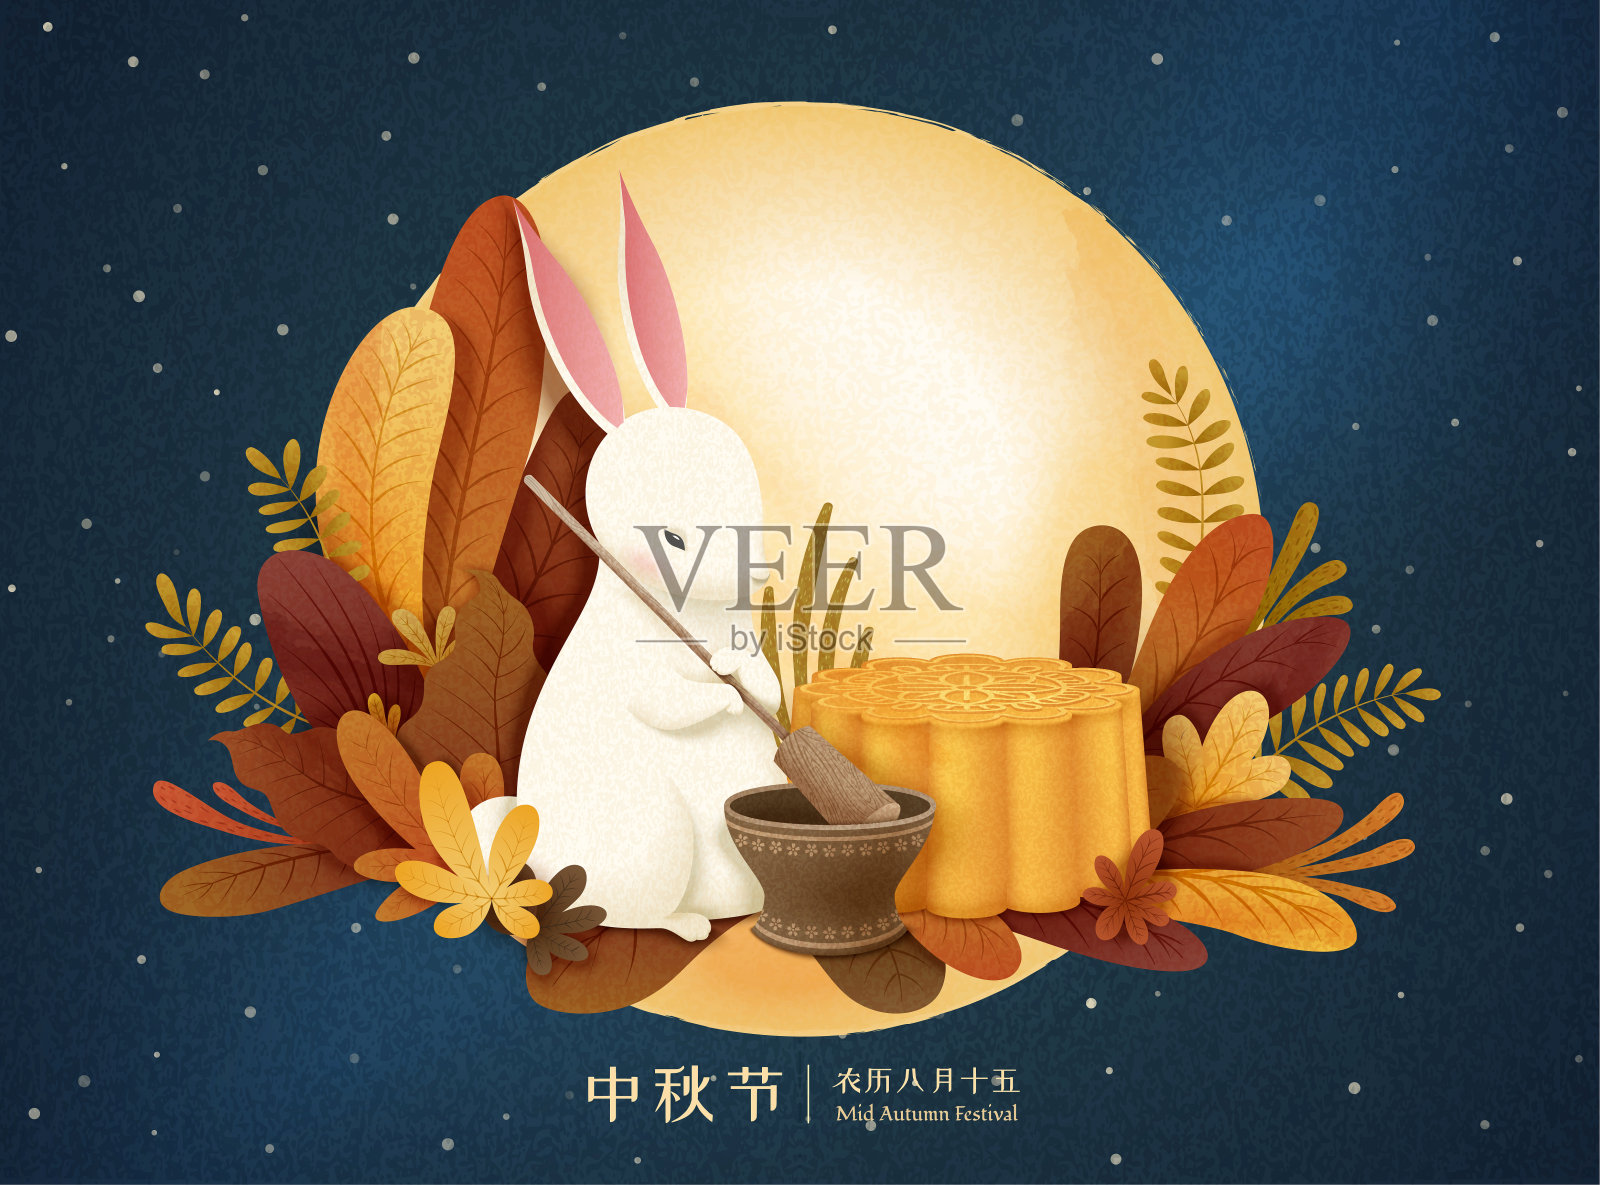 中秋節玉兔與廣式月餅插畫设计模板素材